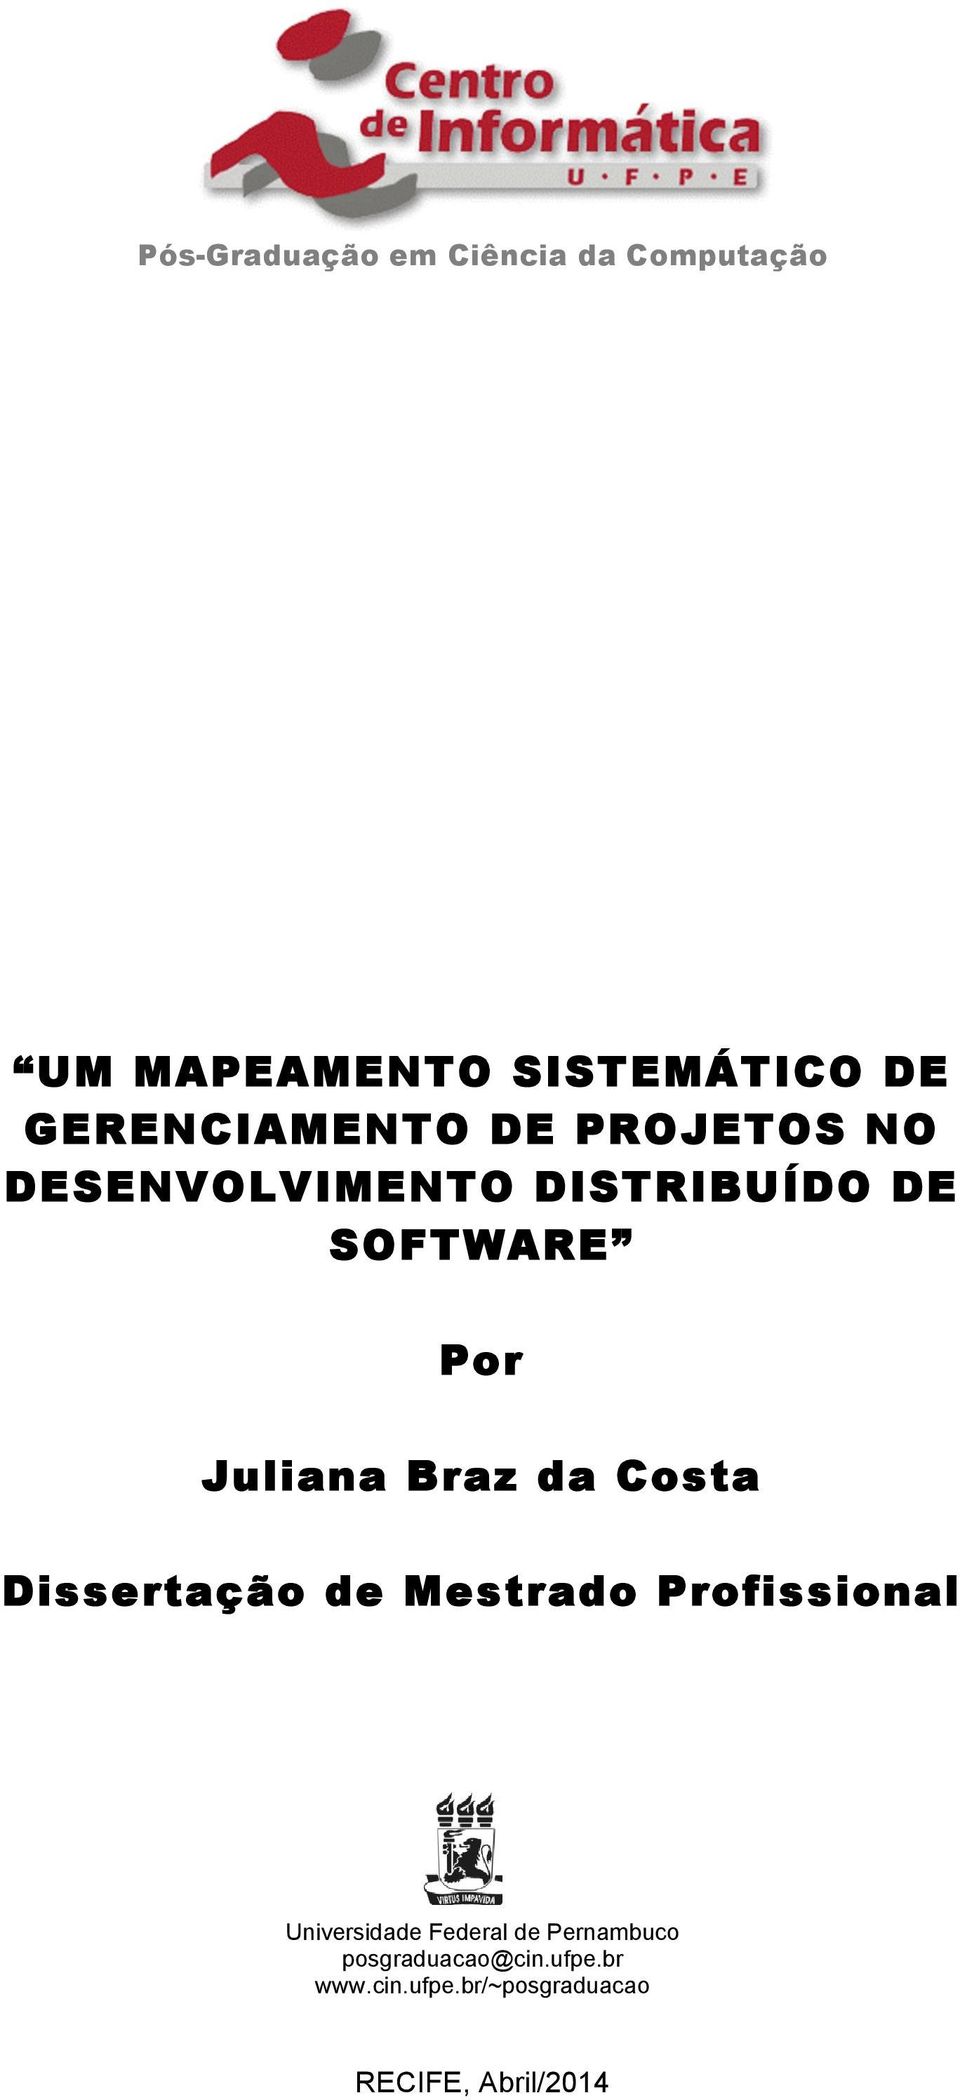 Juliana Braz da Costa Dissertação de Mestrado Profissional Universidade